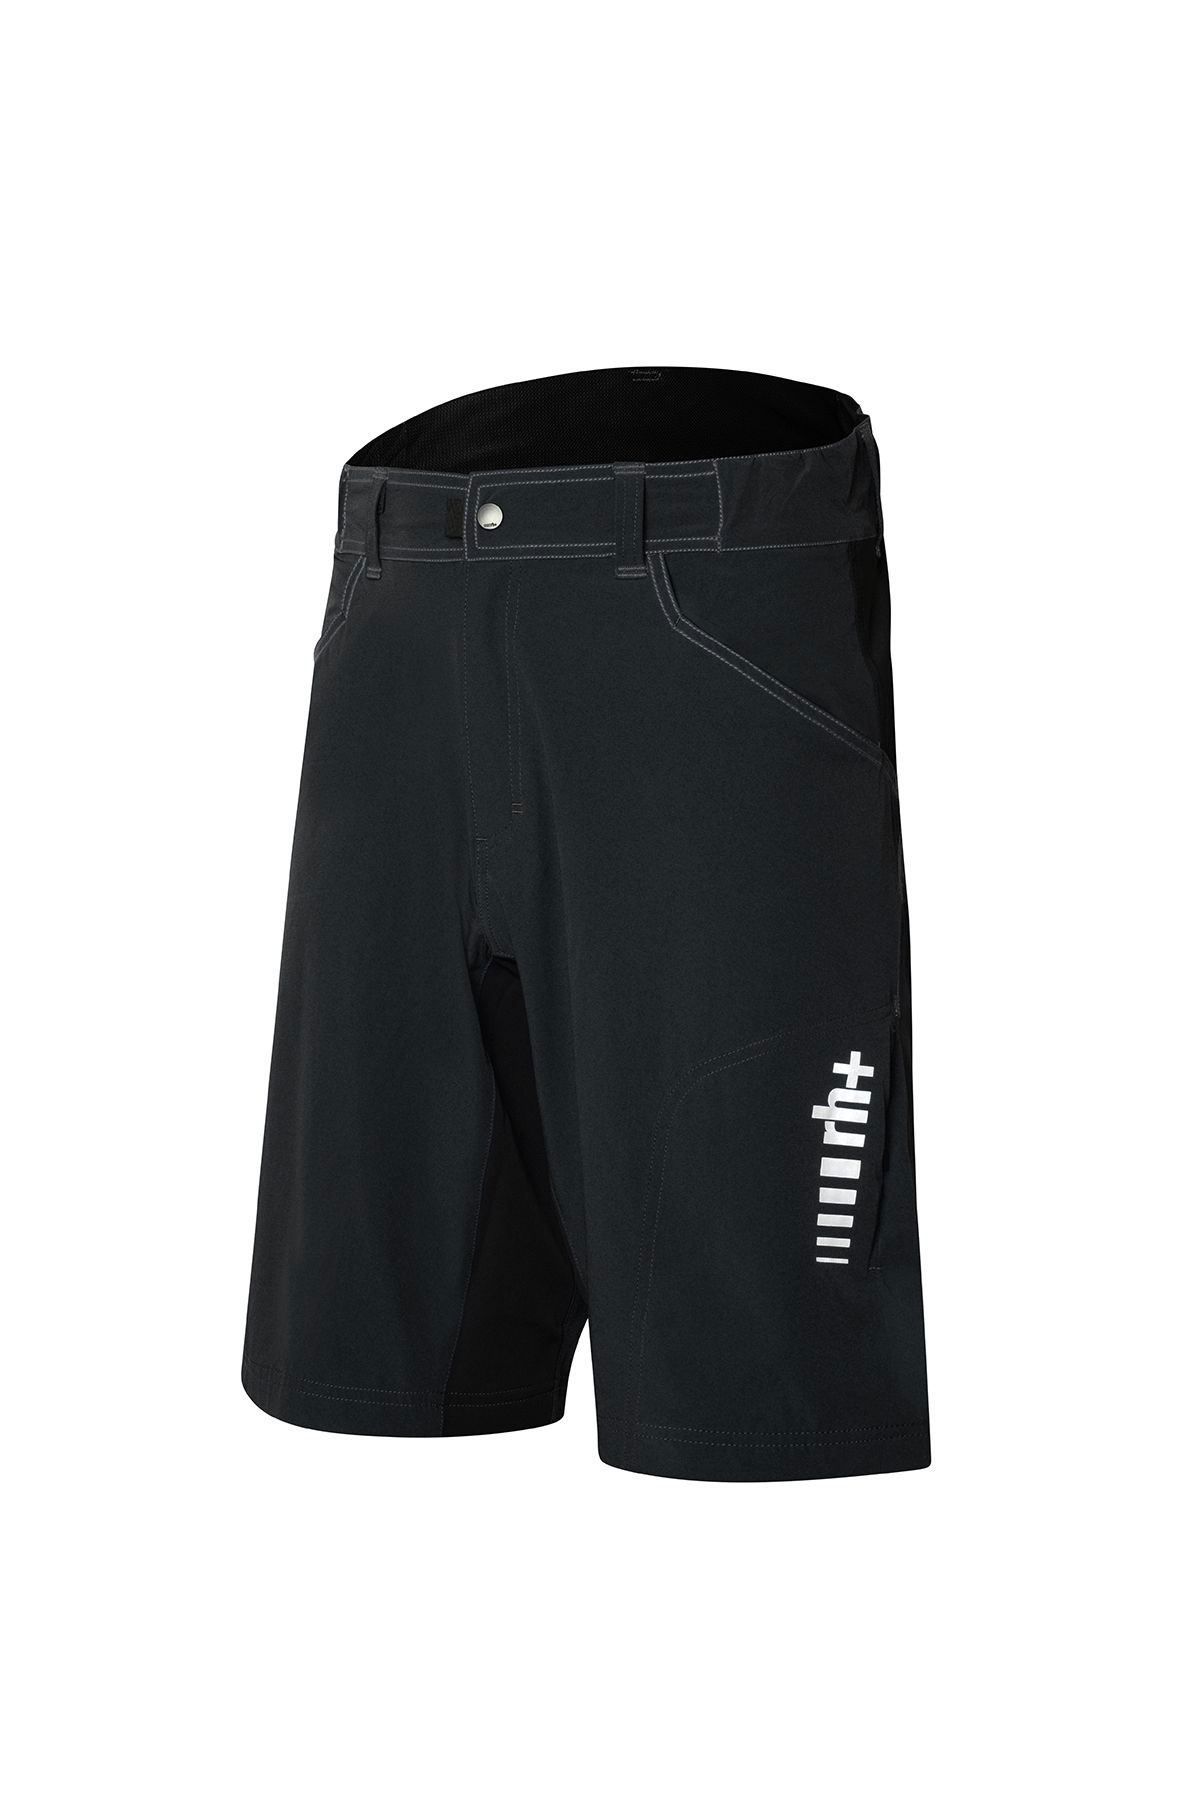 Pantaloncino RH+ MTB Short Nero